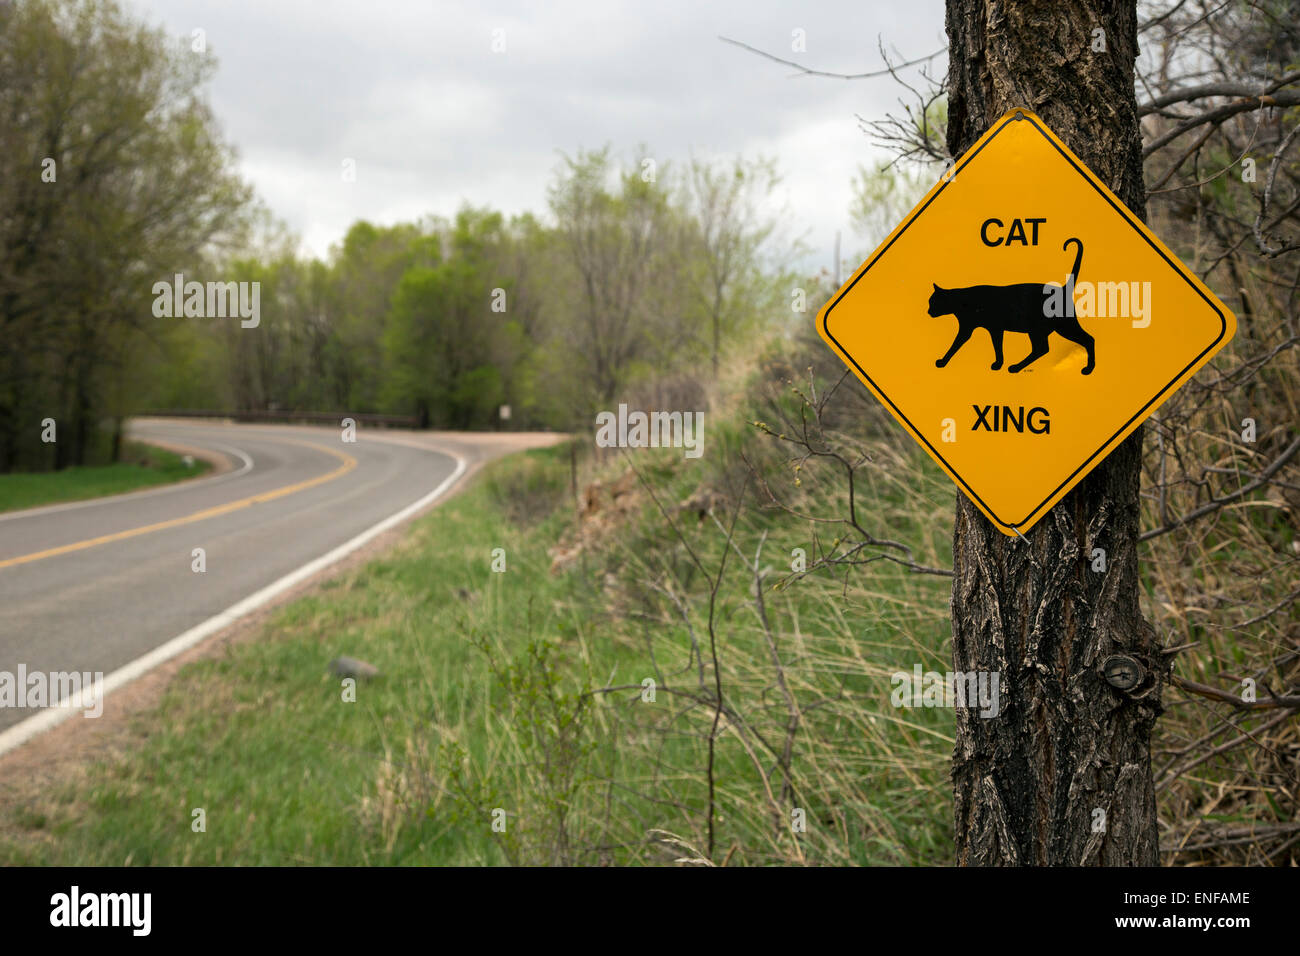 Masonville, Colorado - un signe met en garde les automobilistes à se méfier des chats qui traversent la route. Banque D'Images